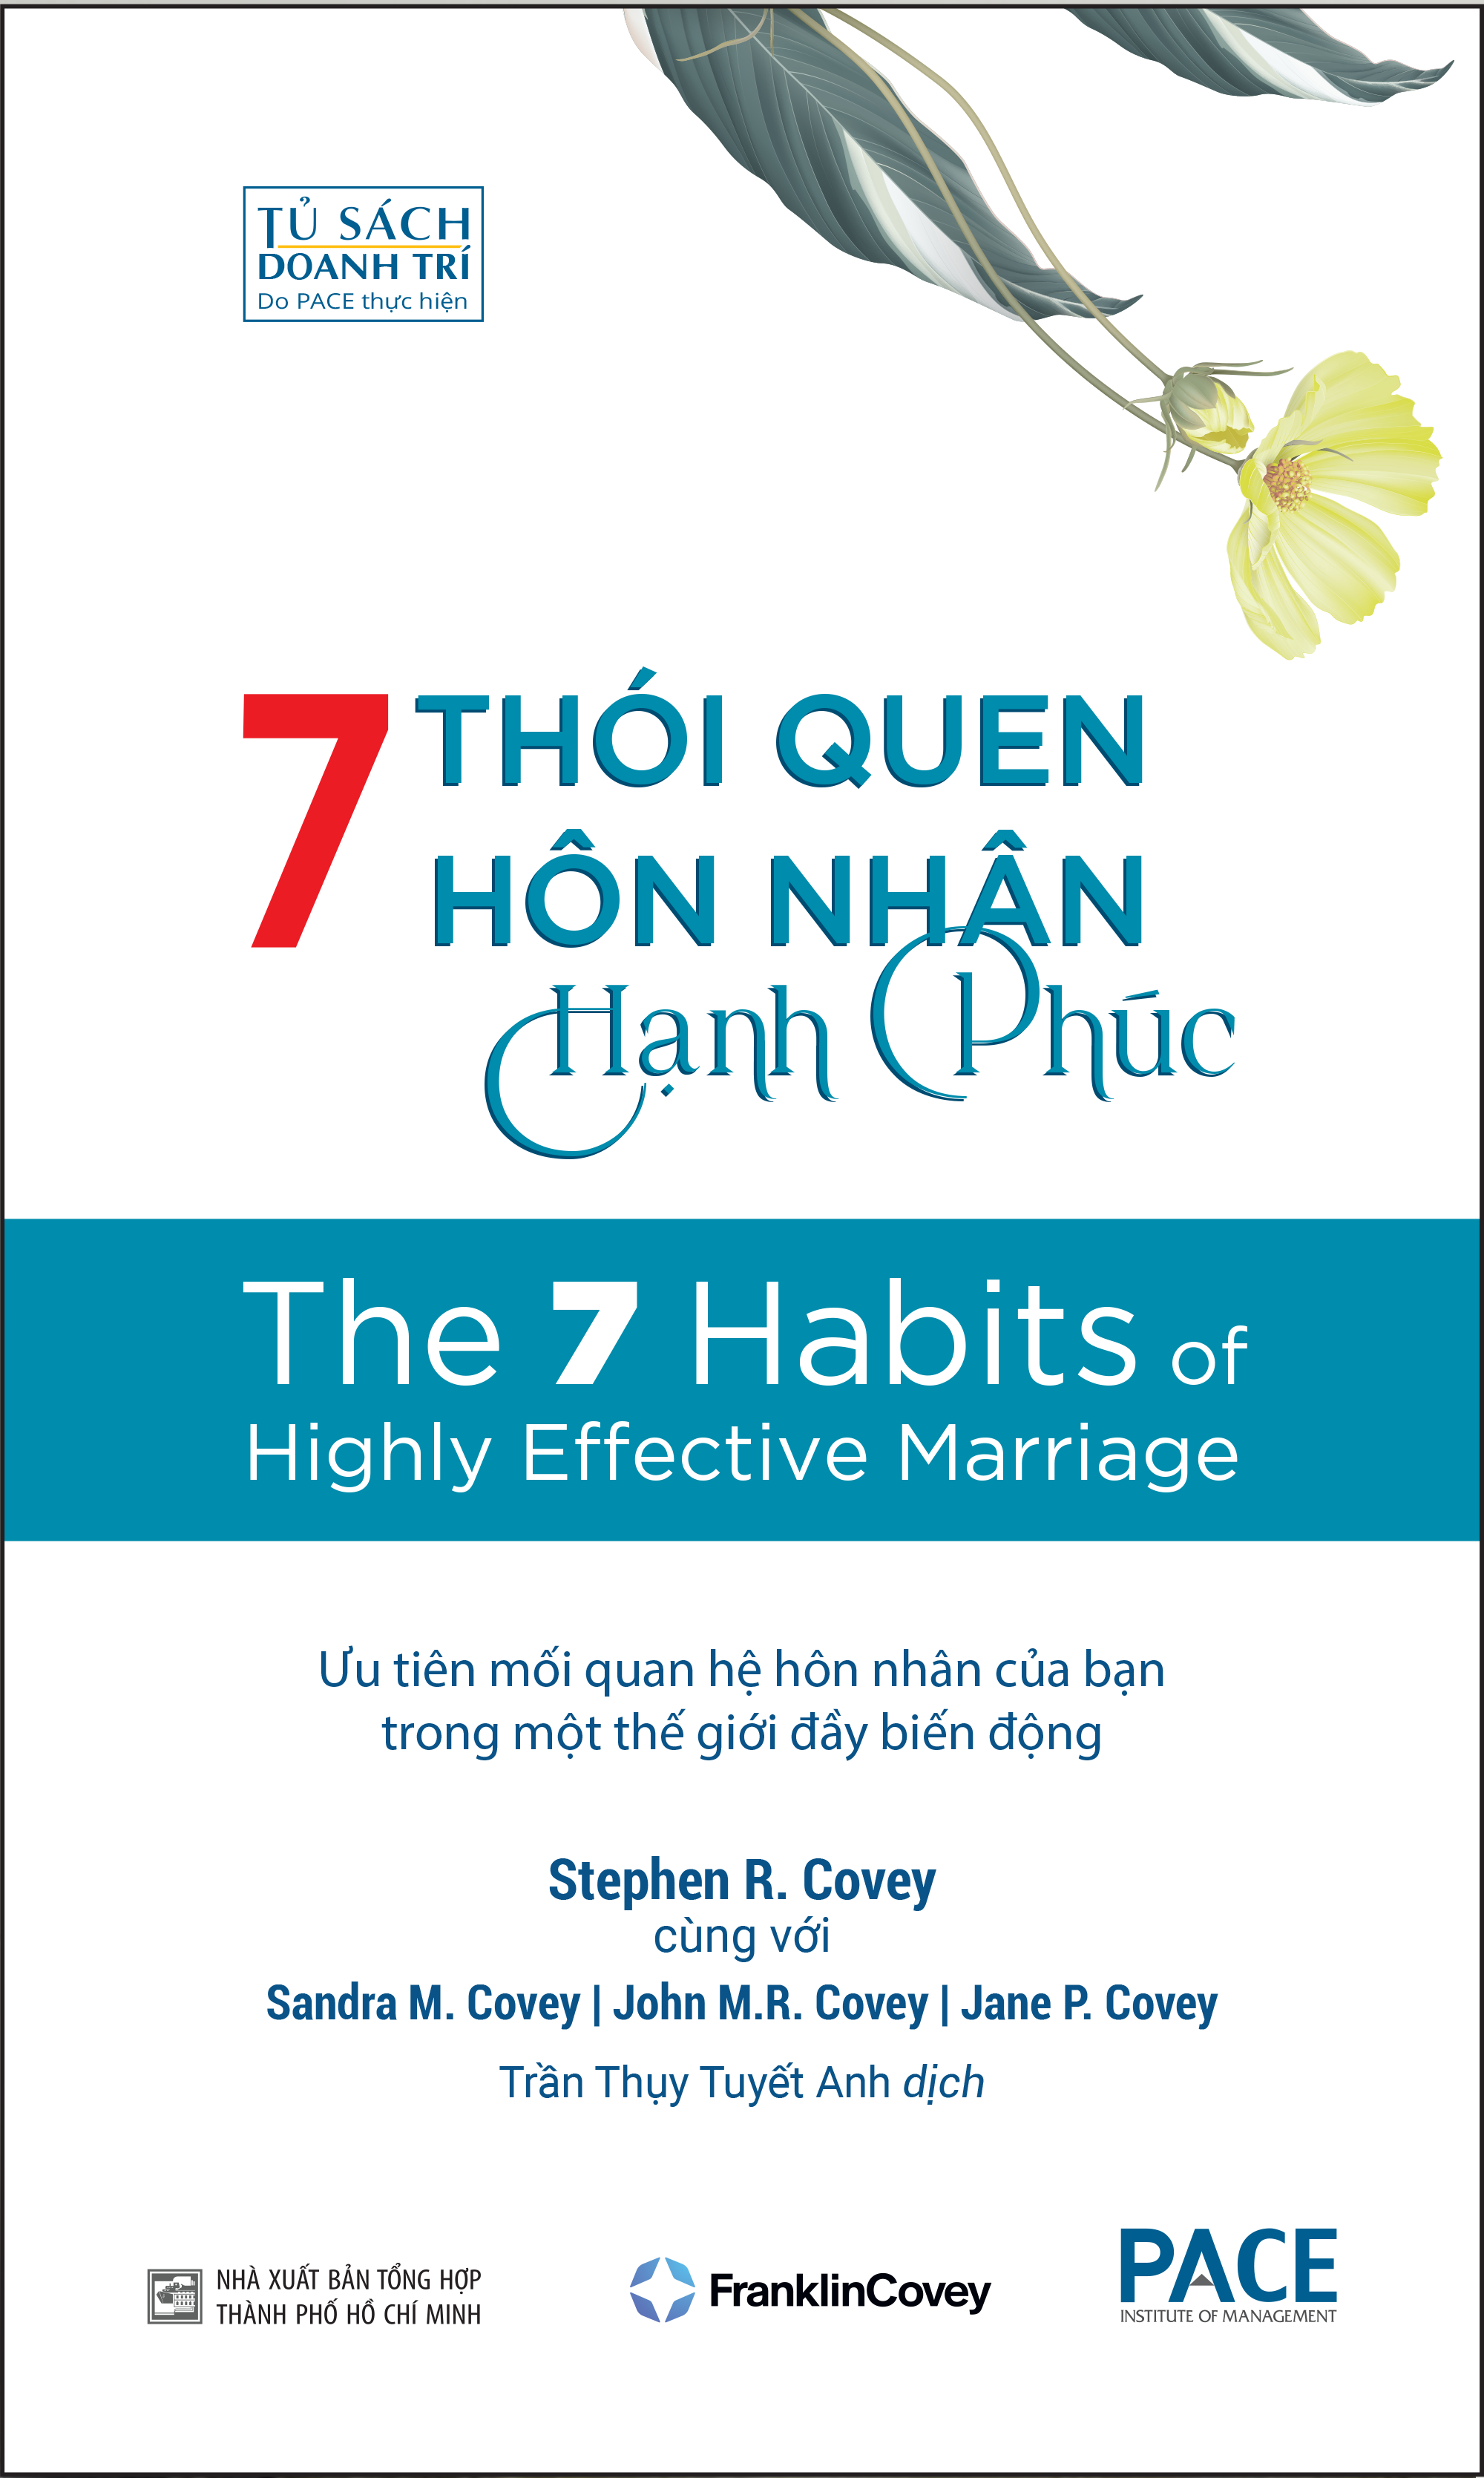 7 THÓI QUEN HÔN NHÂN HẠNH PHÚC (The 7 Habits of Highly Effective Marriage) - TS. Stephen R. Covey, Sandra M. Covey, TS. John M.R. Covey, Jane P. Covey - Trần Thụy Tuyết Anh dịch - (bìa mềm)